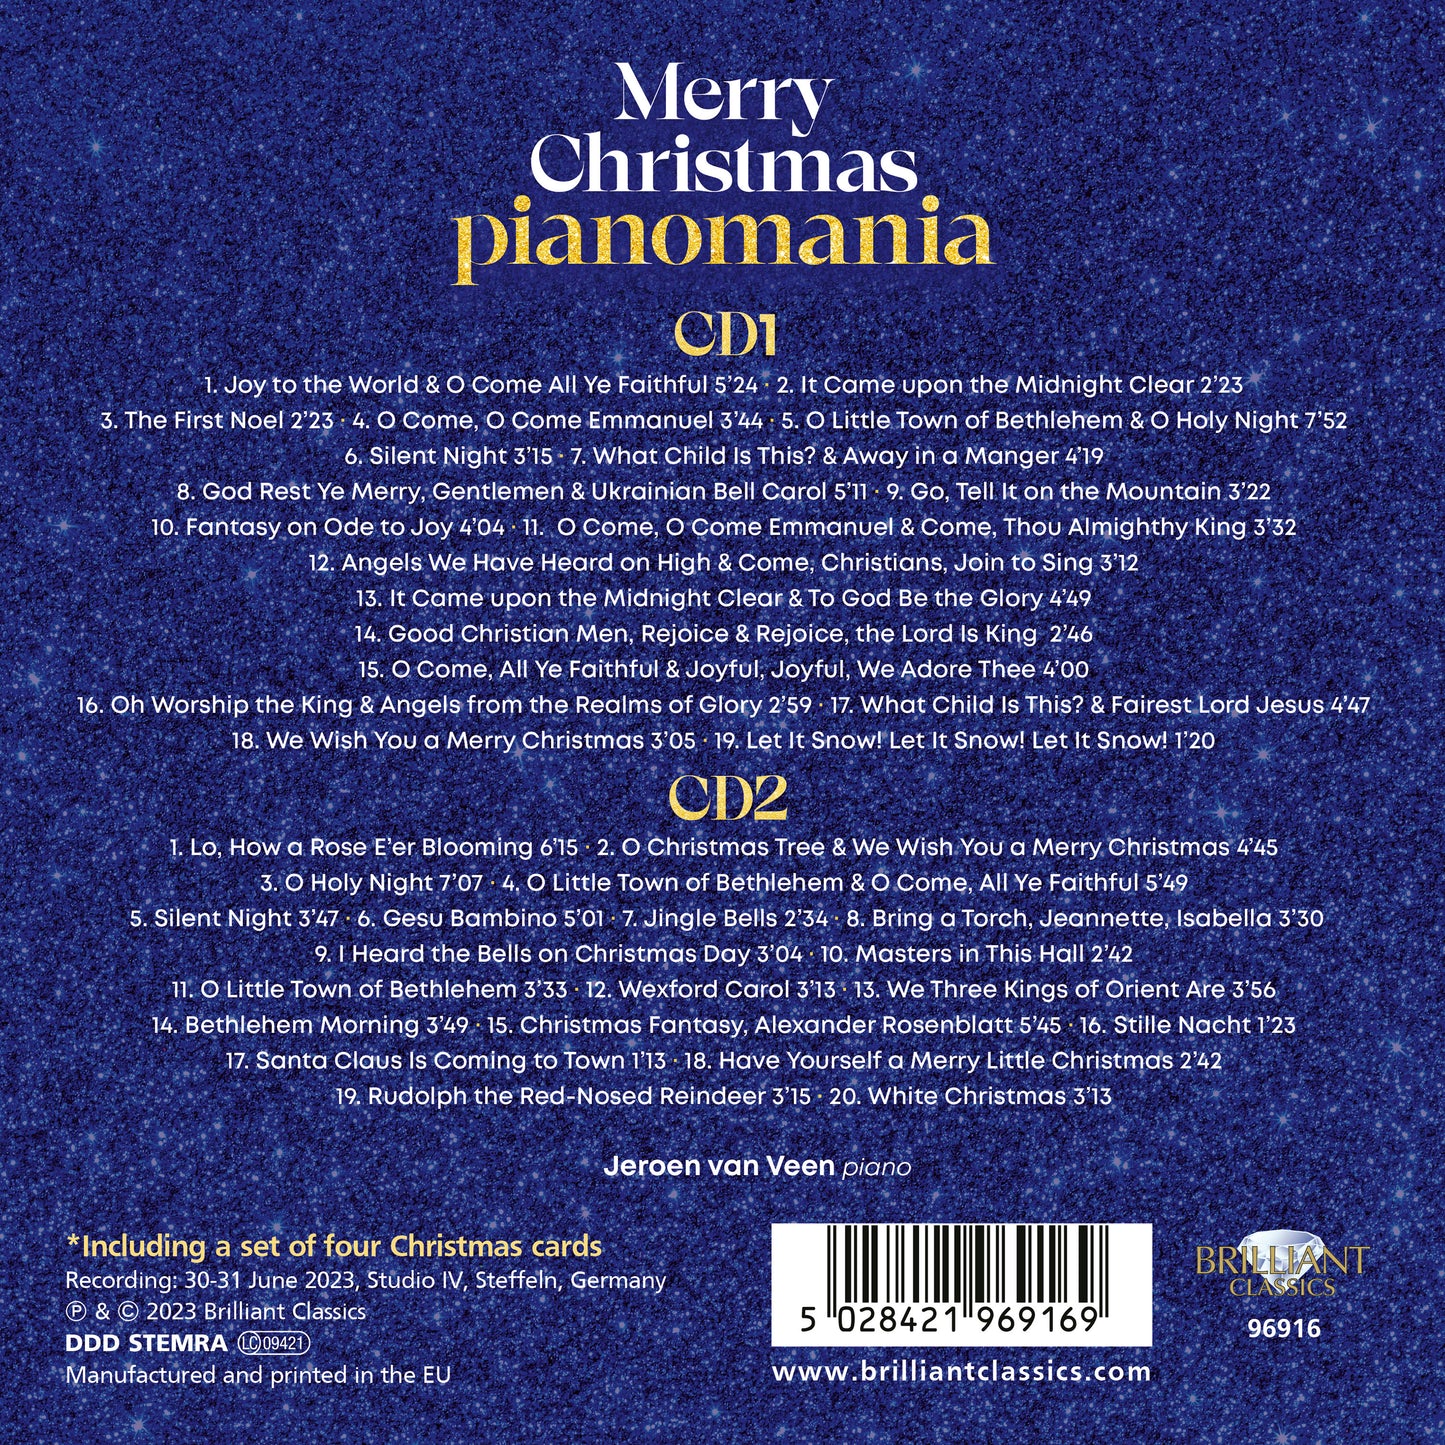 Merry Christmas Pianomania / Jeroen van Veen [2 CDs]